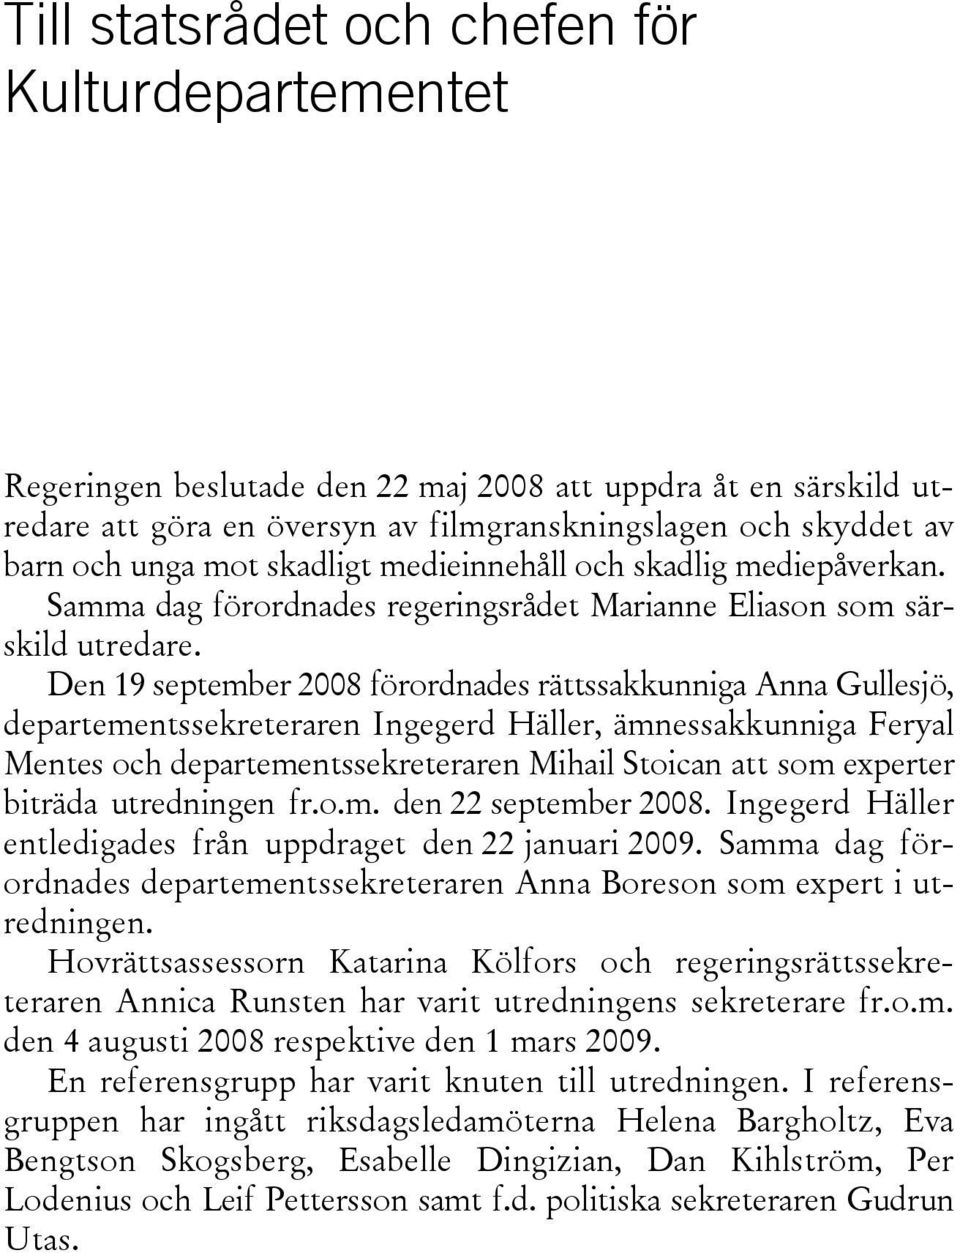 Den 19 september 2008 förordnades rättssakkunniga Anna Gullesjö, departementssekreteraren Ingegerd Häller, ämnessakkunniga Feryal Mentes och departementssekreteraren Mihail Stoican att som experter